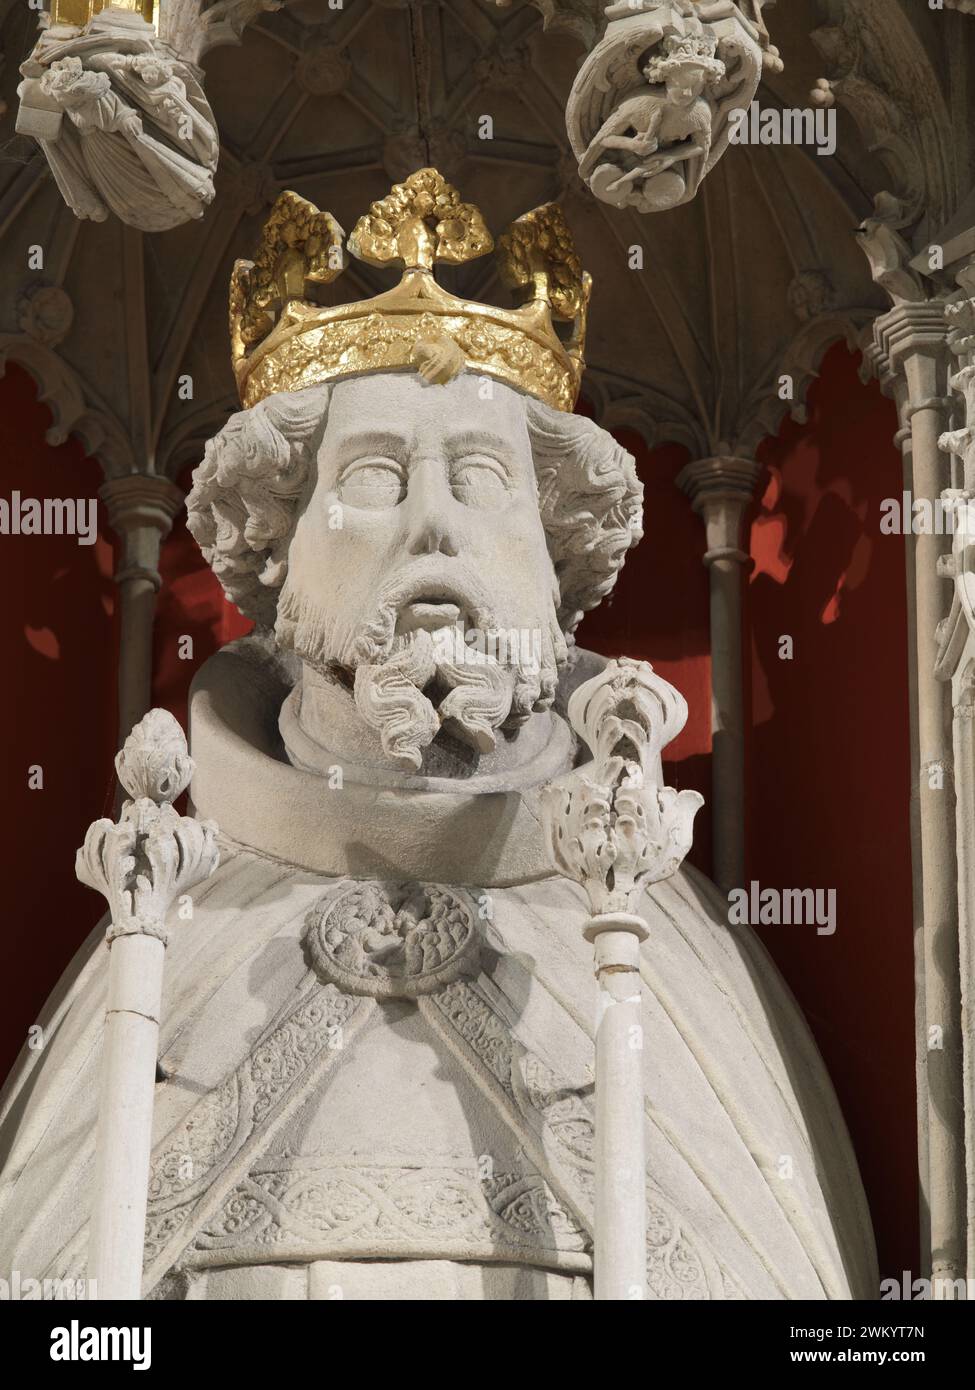 Statue des mittelalterlichen englischen Königs Heinrich III., auf der Leinwand im Münster (Kathedrale) in York, England. Stockfoto